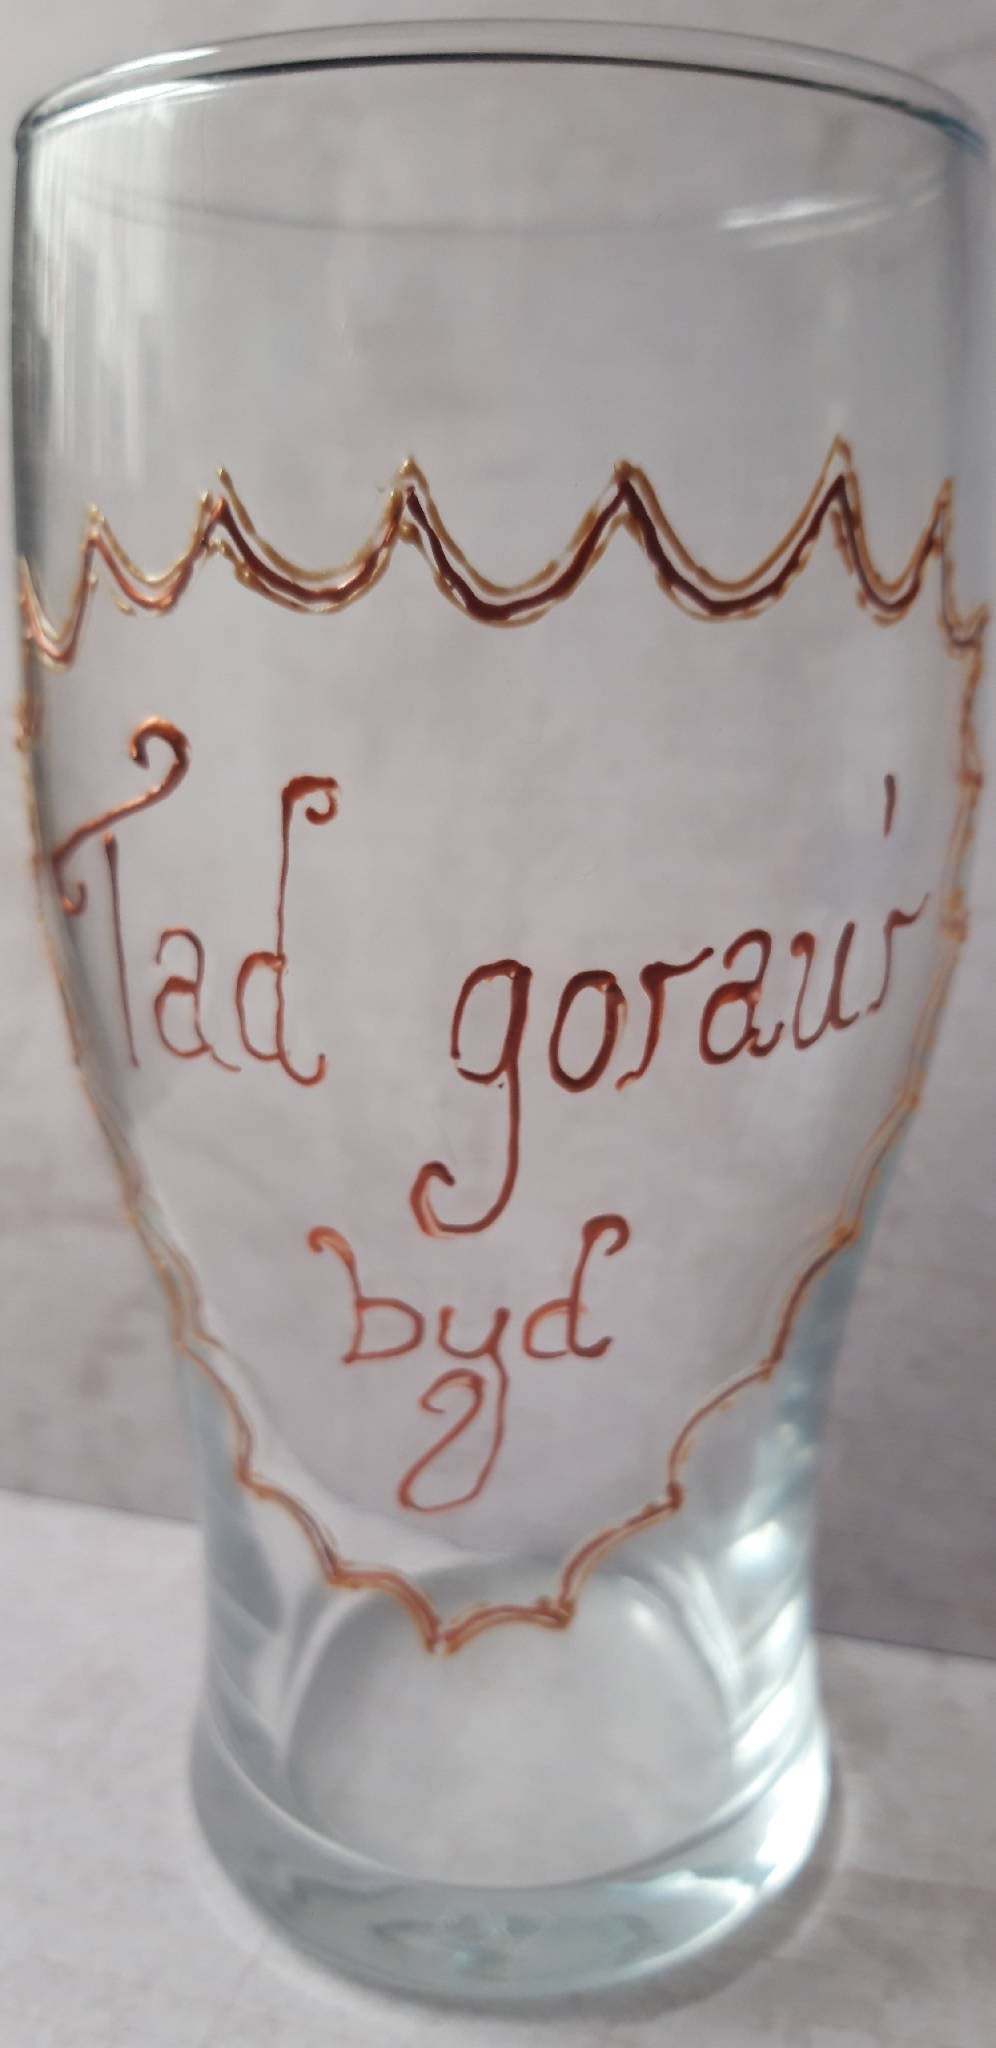 "Tad gorau'r byd" pint glass